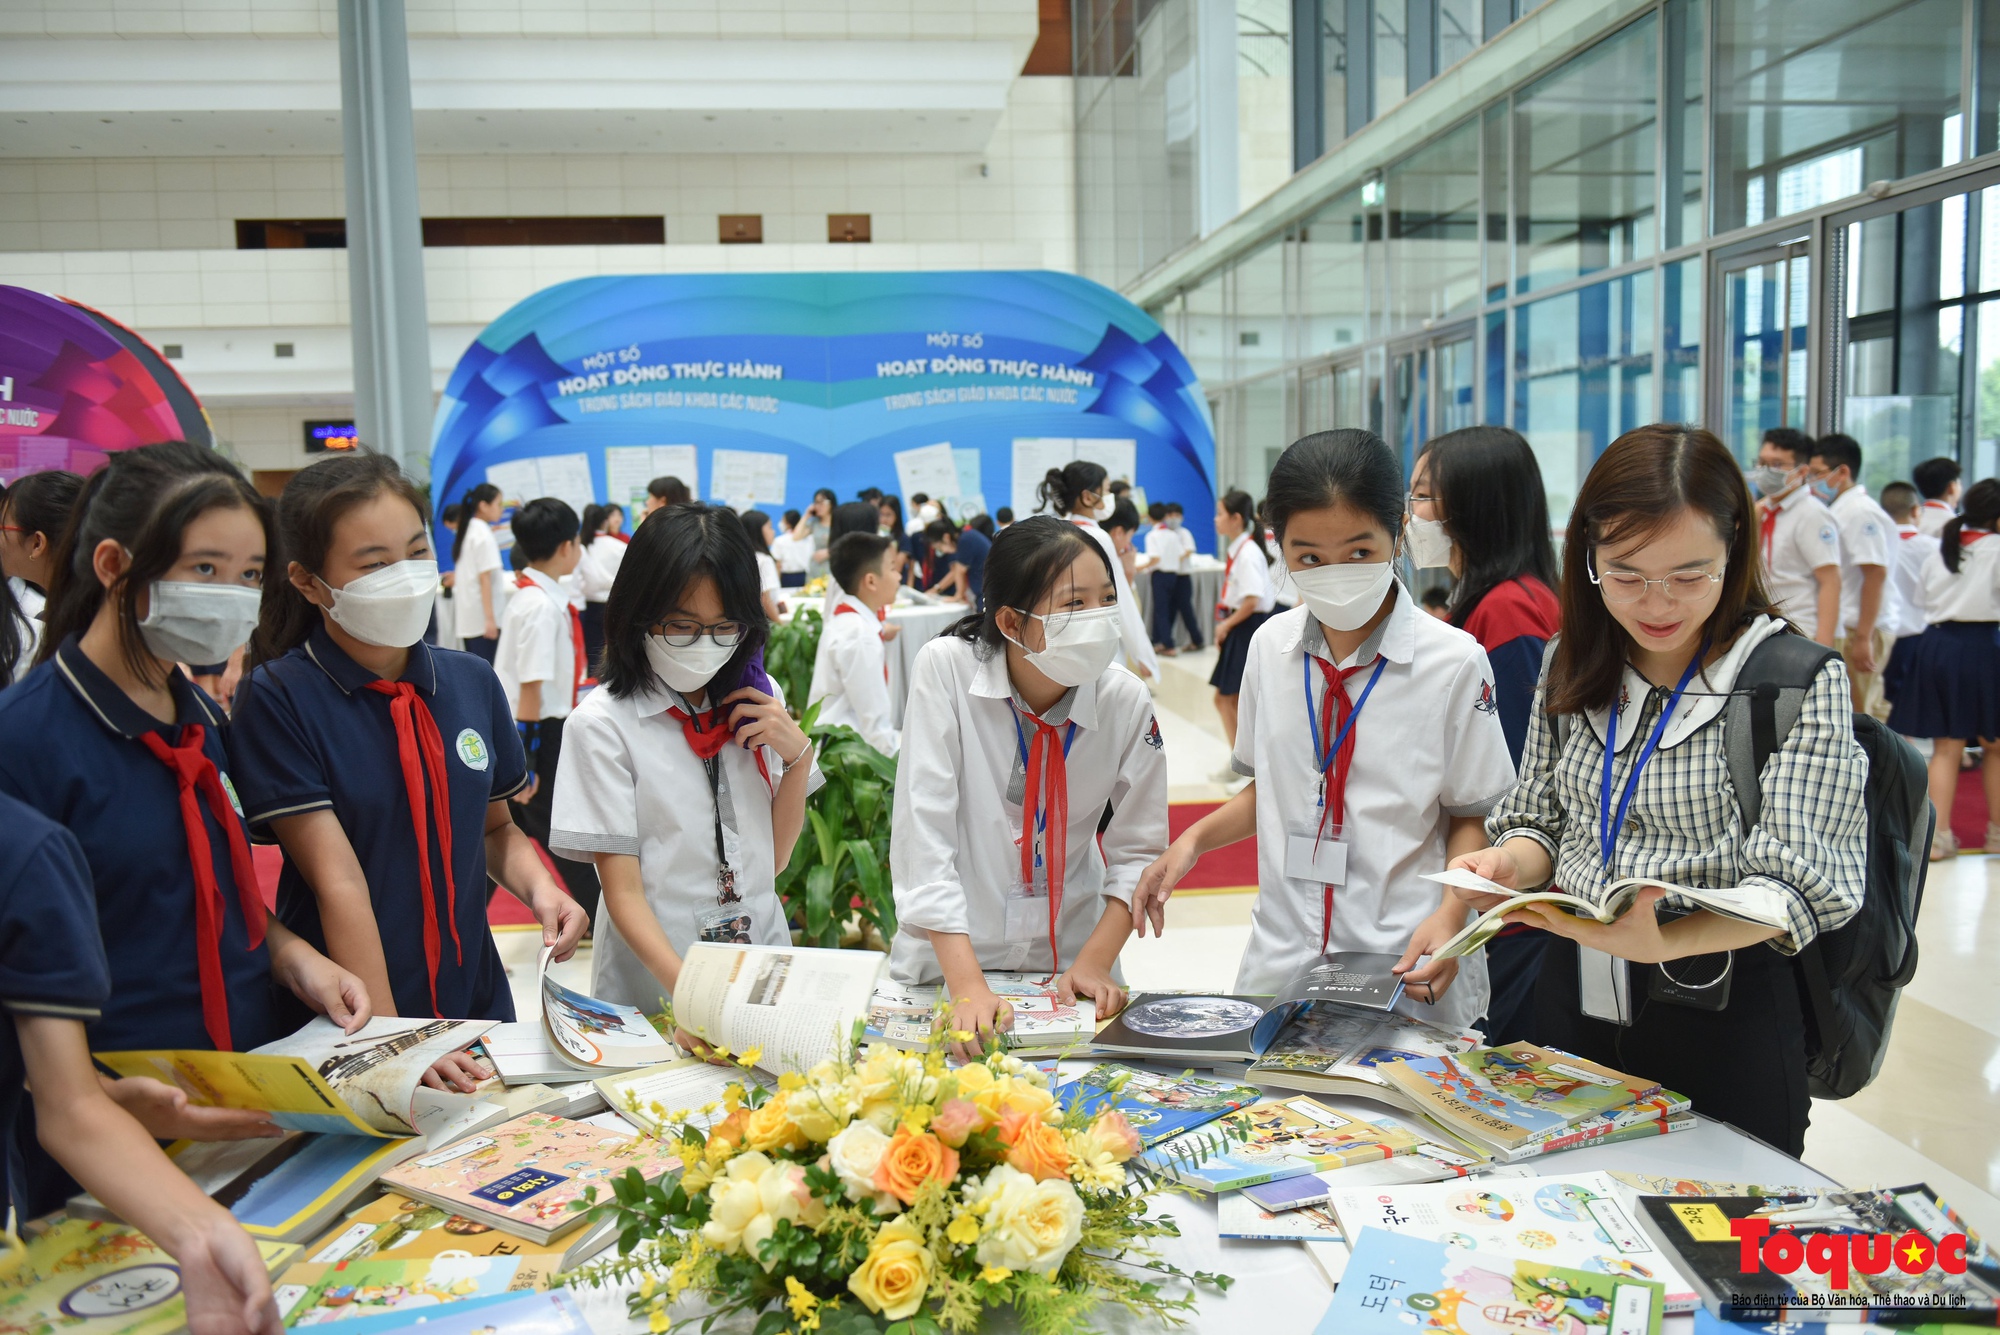 Hà Nội: Học sinh thủ đô hào hứng với hoạt động Trưng bày sách giáo khoa giáo dục phổ thông - Ảnh 3.